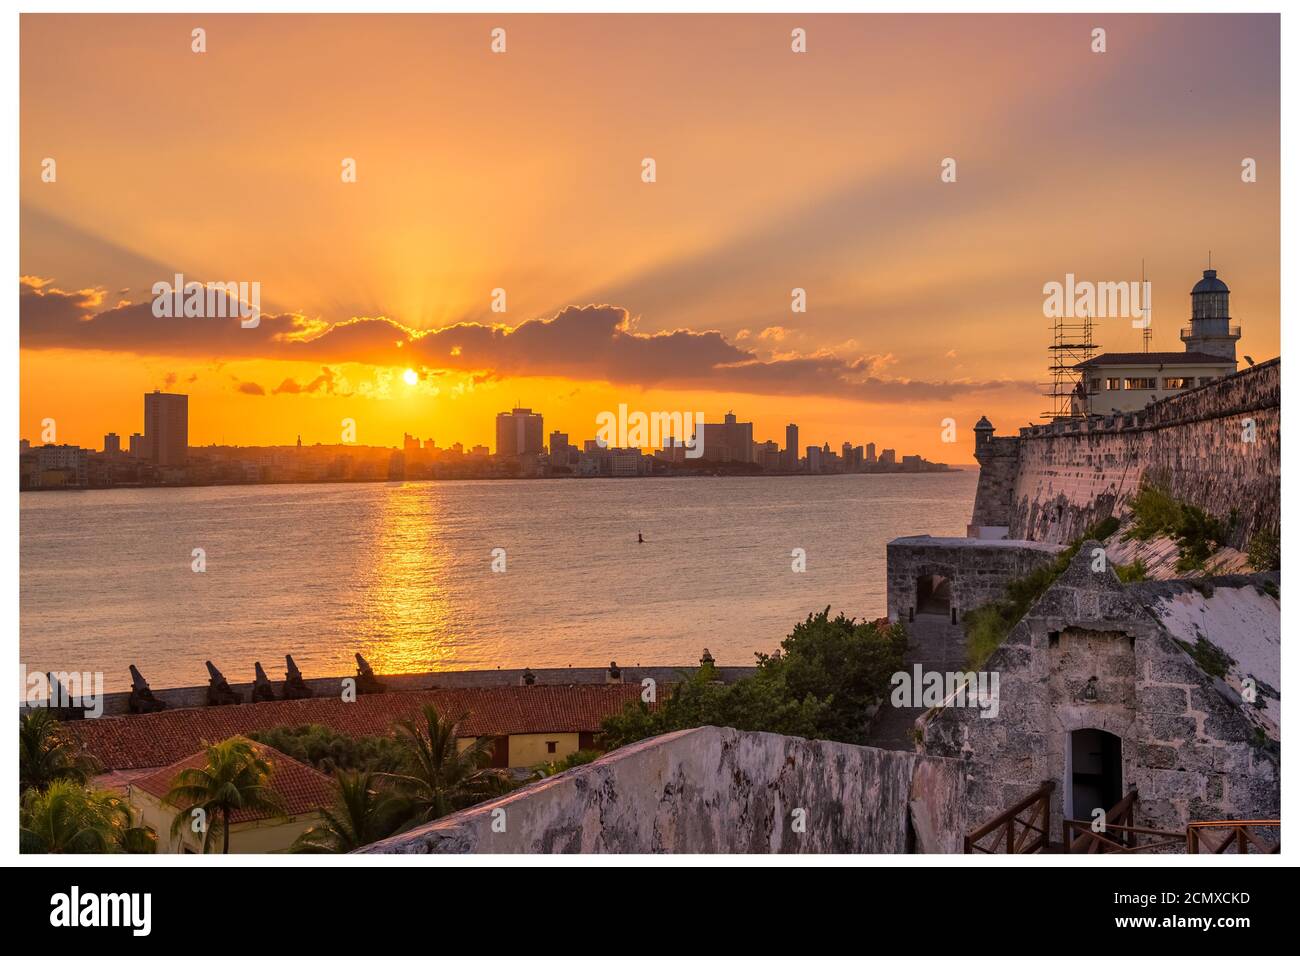 Splendido tramonto a l'Avana con vista dello skyline della città, del faro di El Morro e del tramonto sugli edifici, visto dall'altra parte della baia Foto Stock